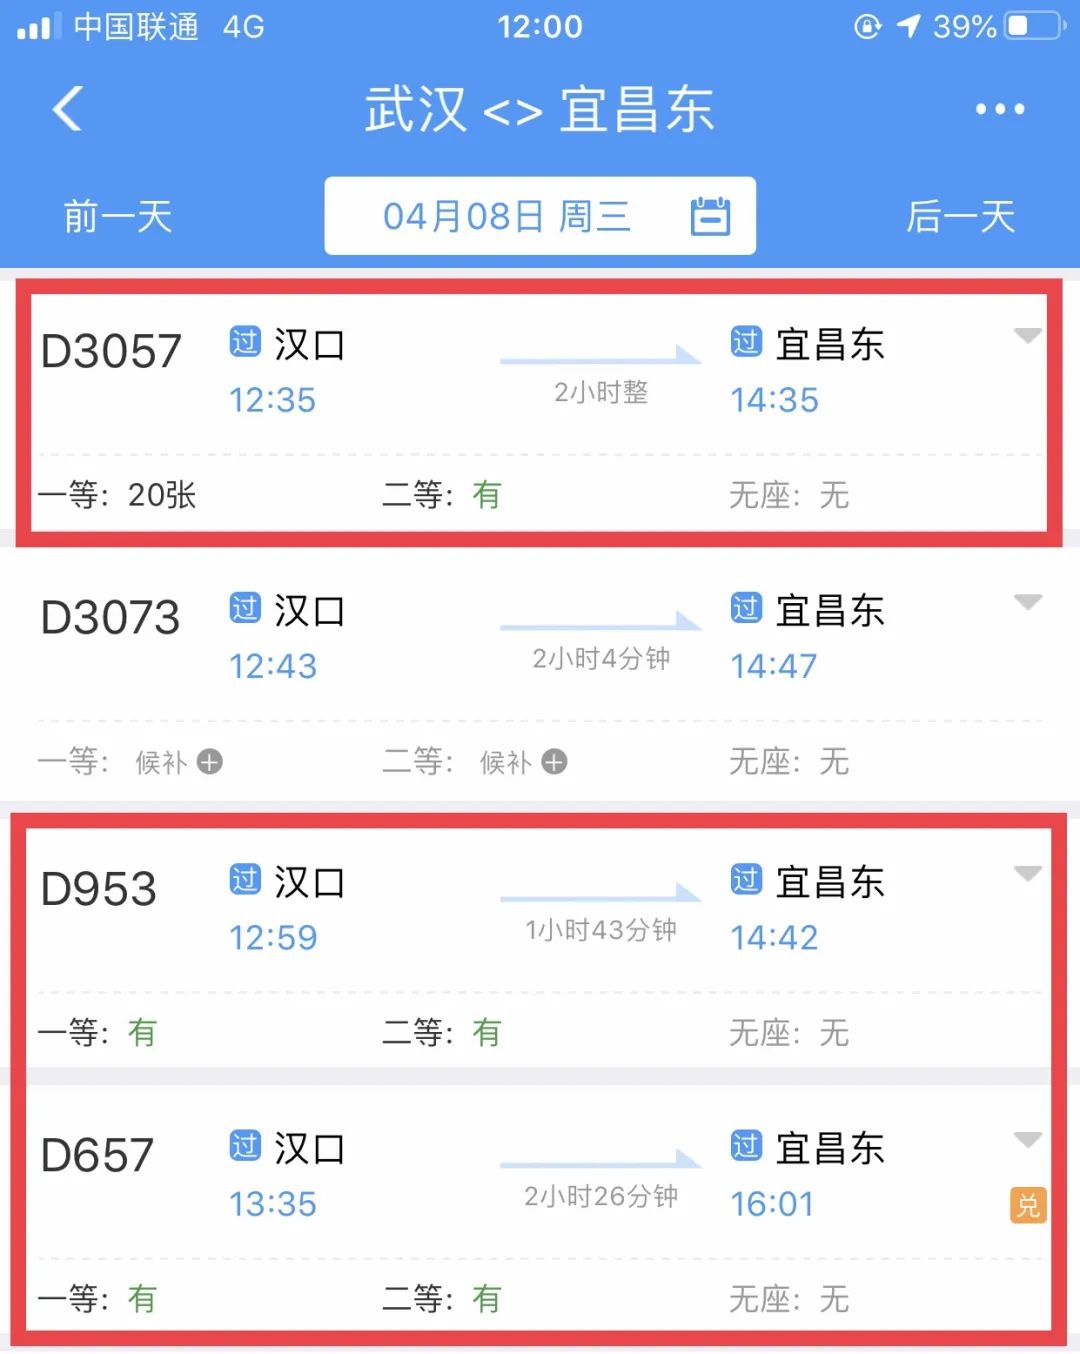 4月8日武汉出发广州,重庆,长沙等地火车票已放票开售